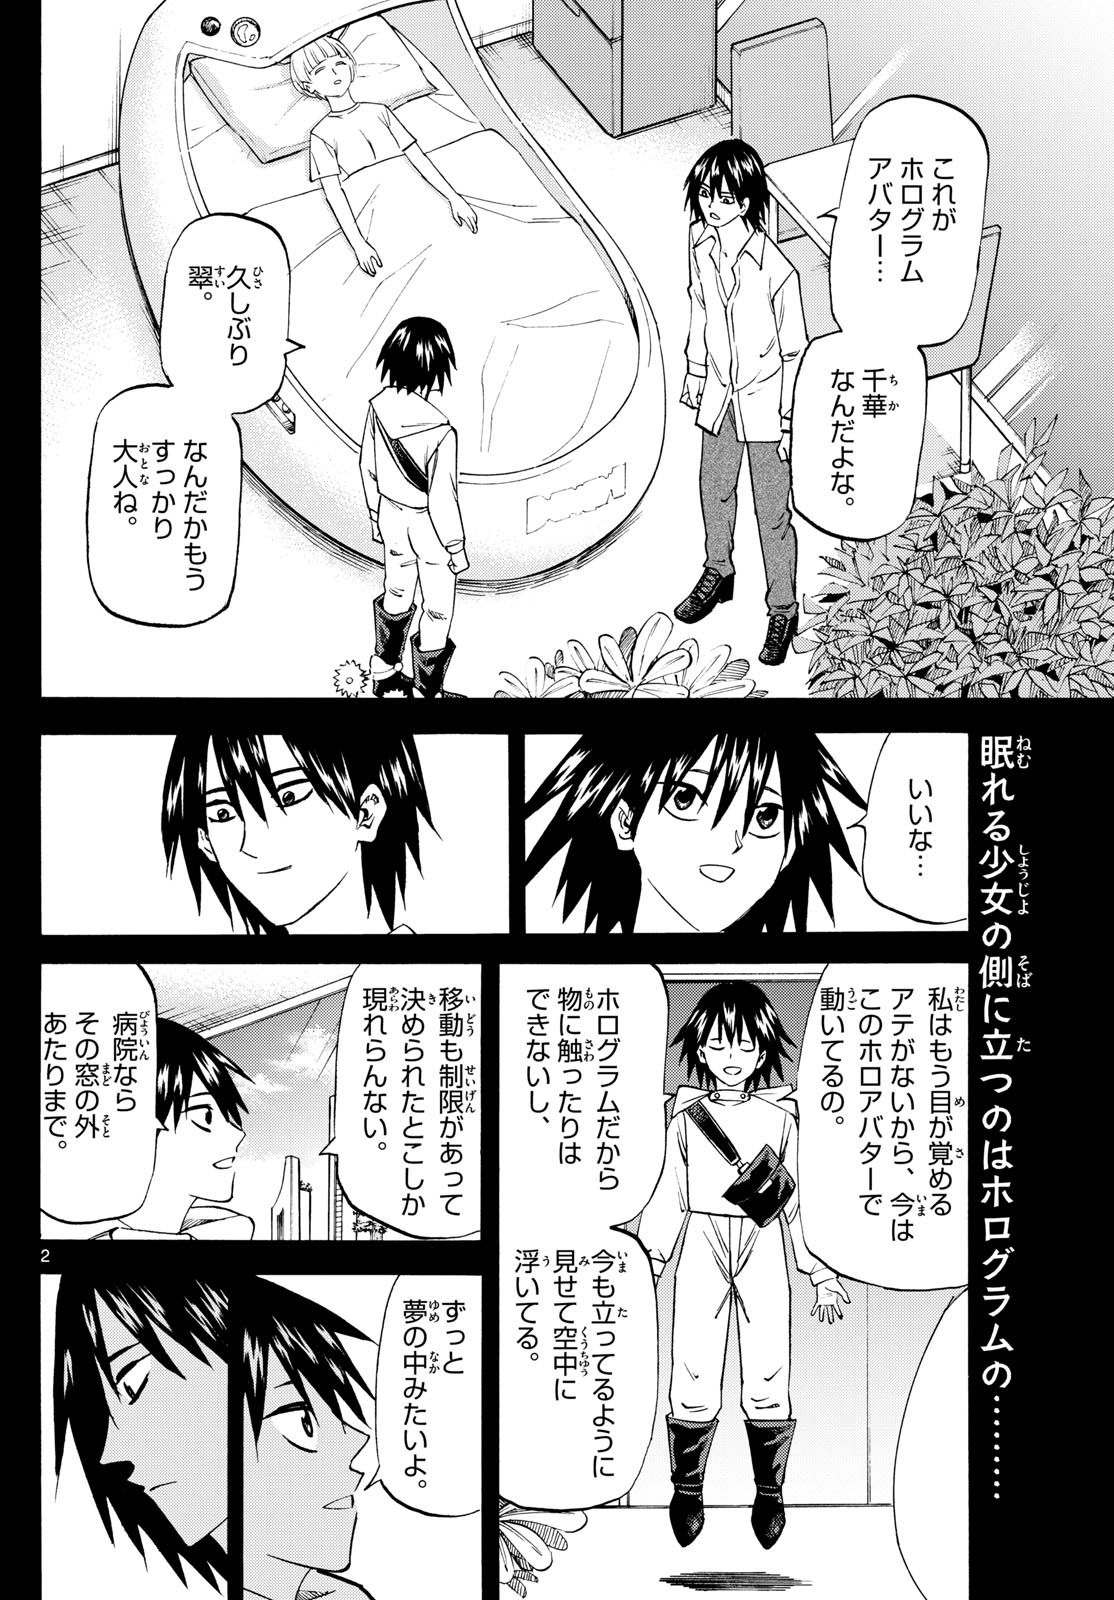 Tatsu to Ichigo - Chapter 194 - Page 2